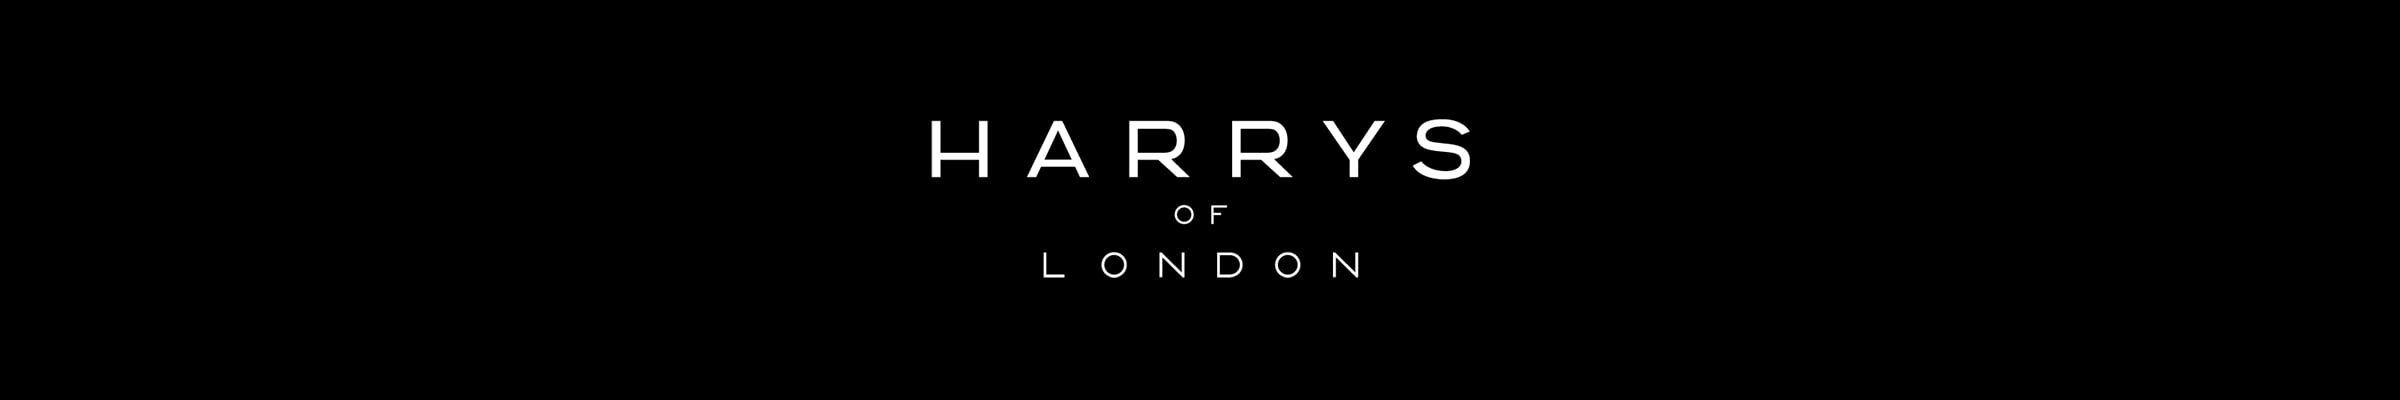 harrys-of-london-banner